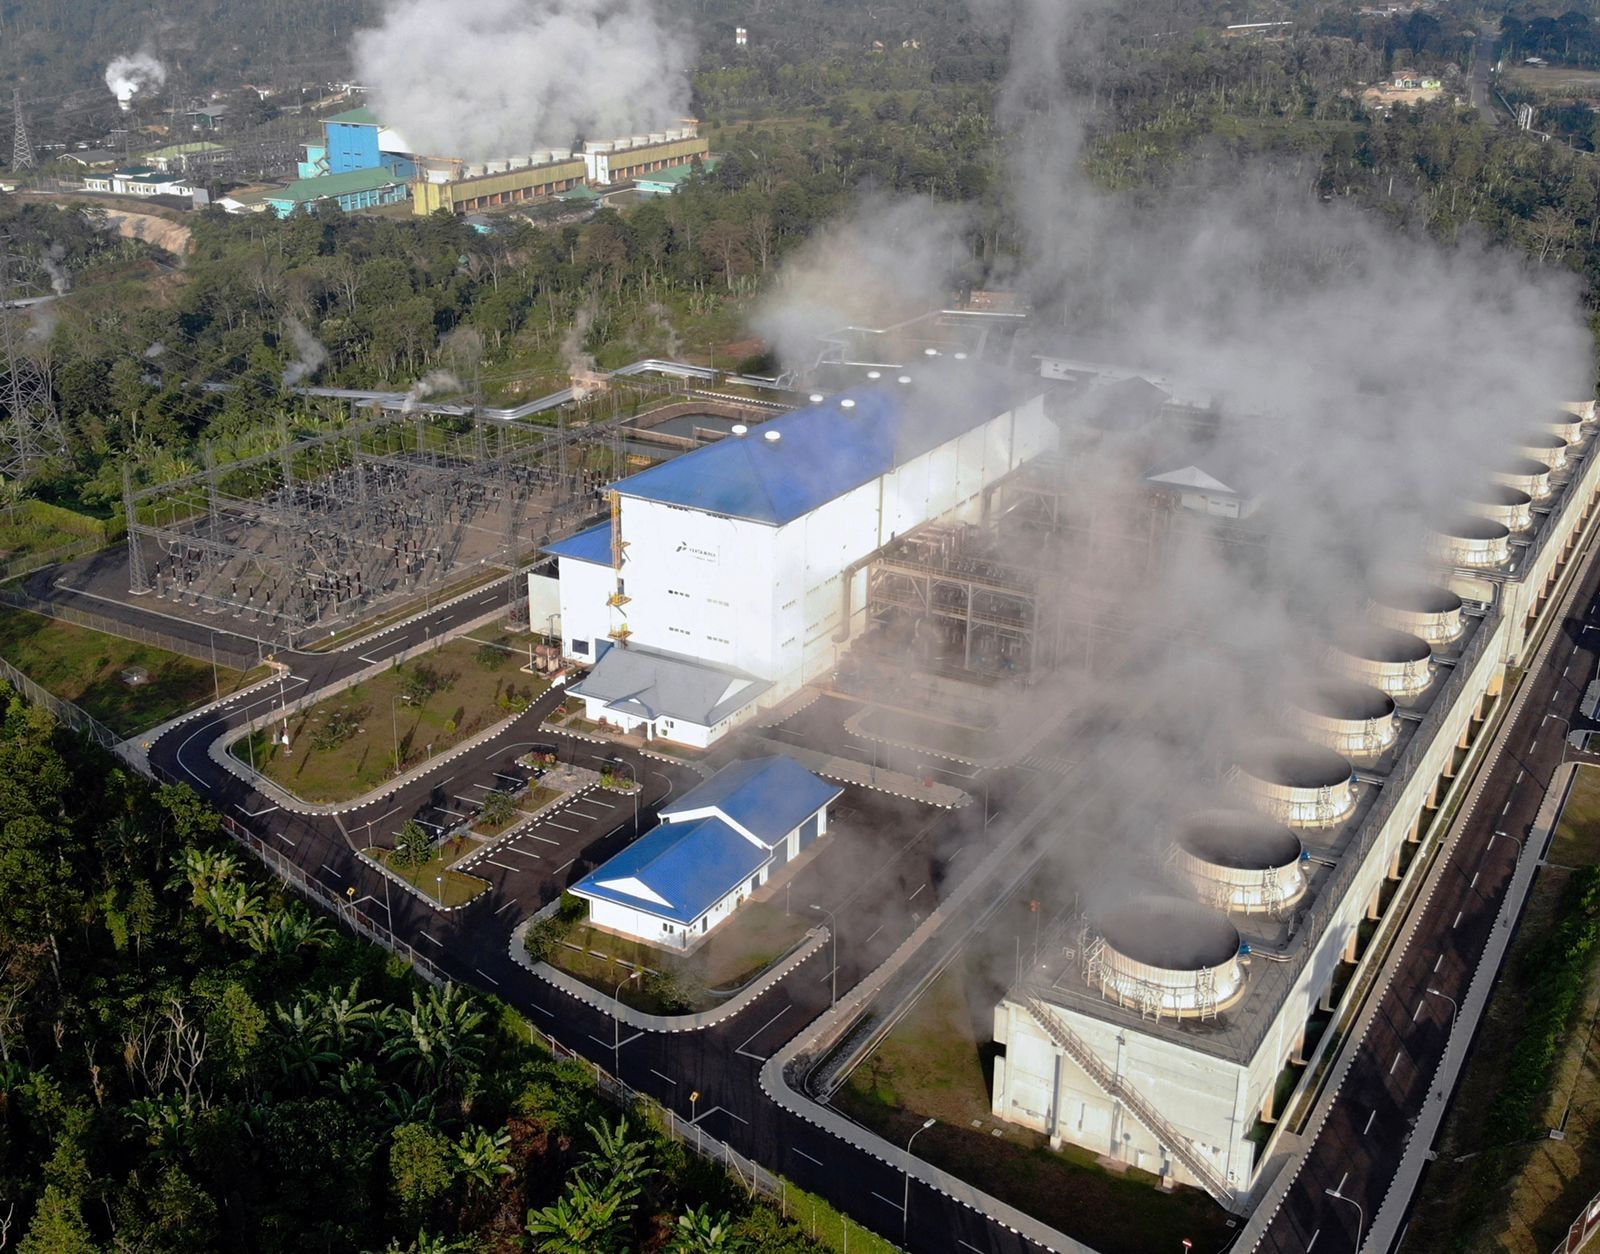 Pertamina Geothermal Energy (PGE) Bakal IPO Juni 2022 (FOTO: MNC Media)